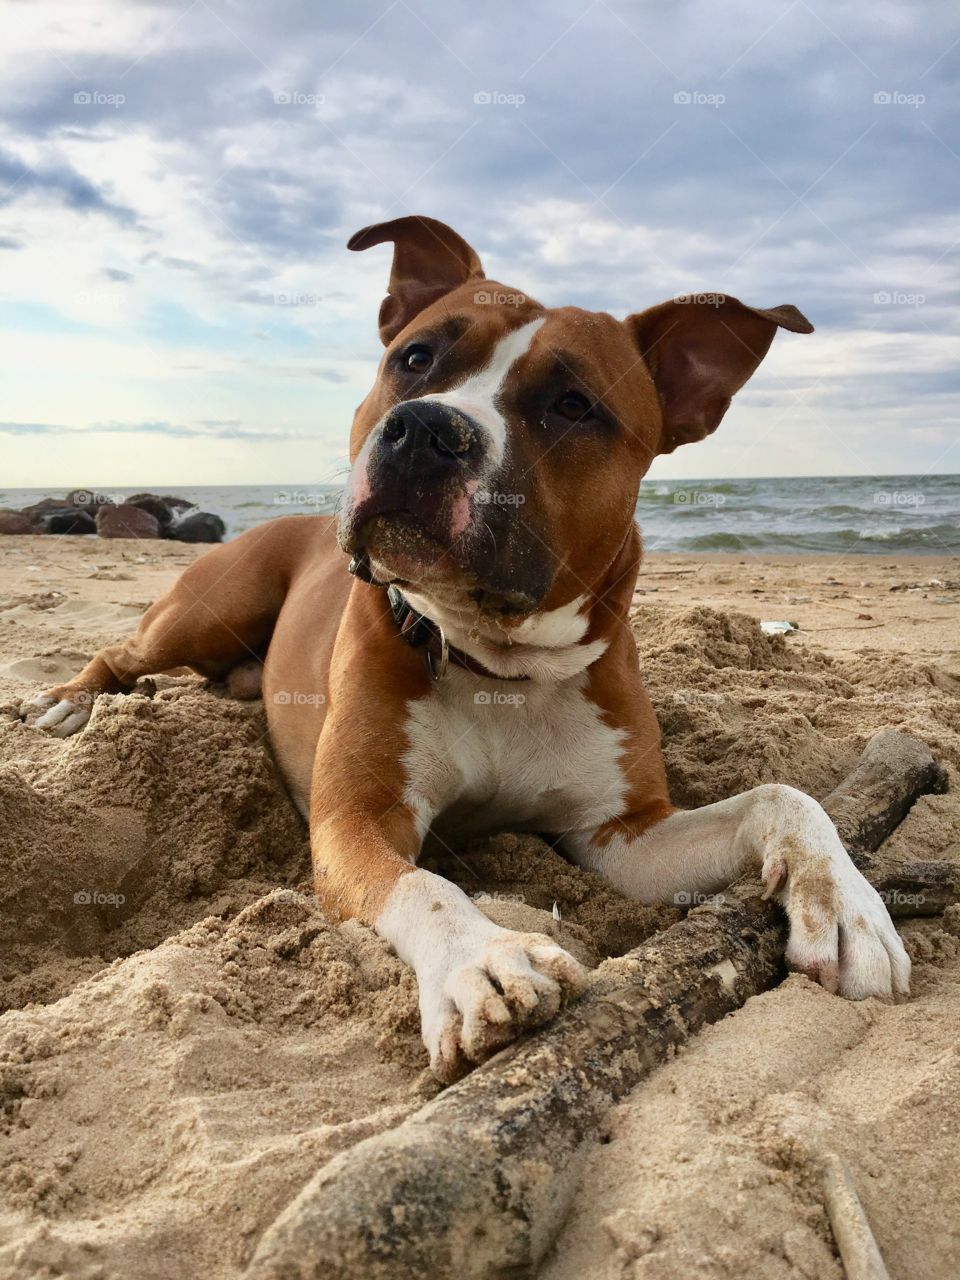 Cute amstaff puppy enjoying day at beach